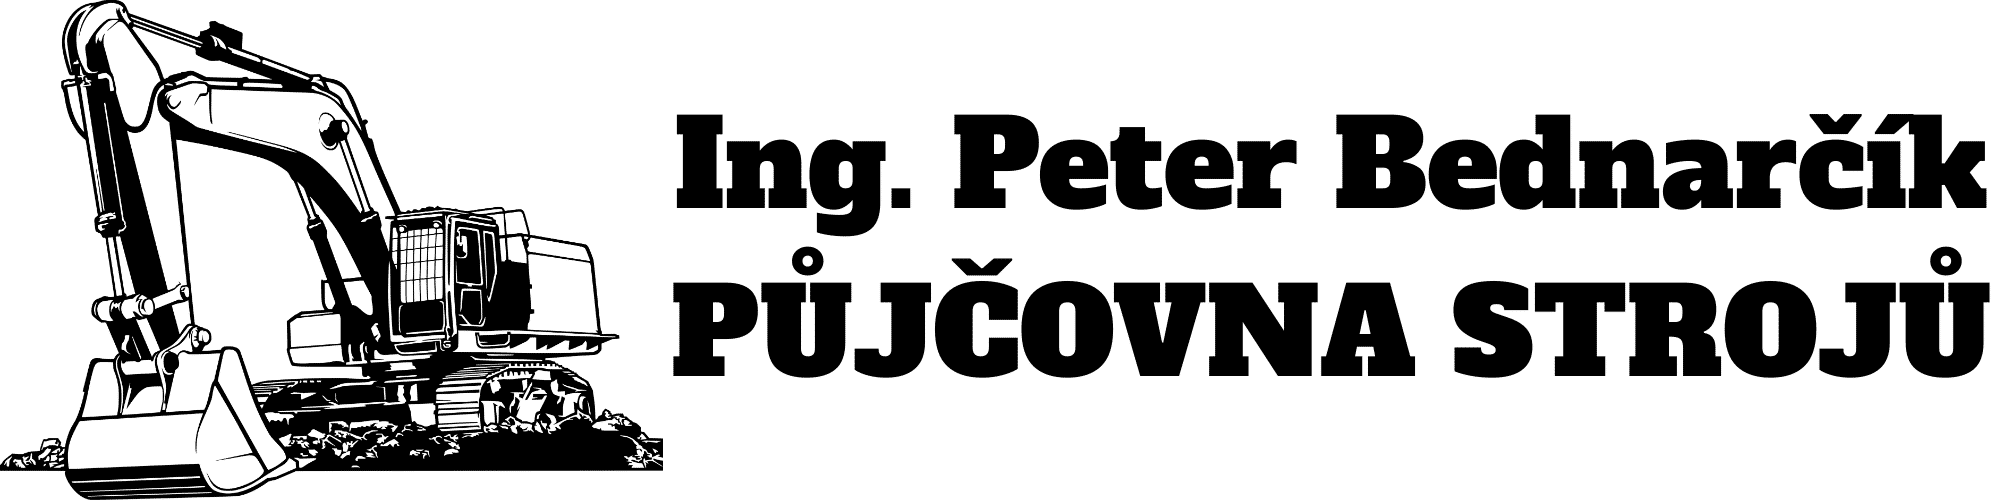 Likvidace hrabošů, hryzců a krtků | Peter Bednarčík